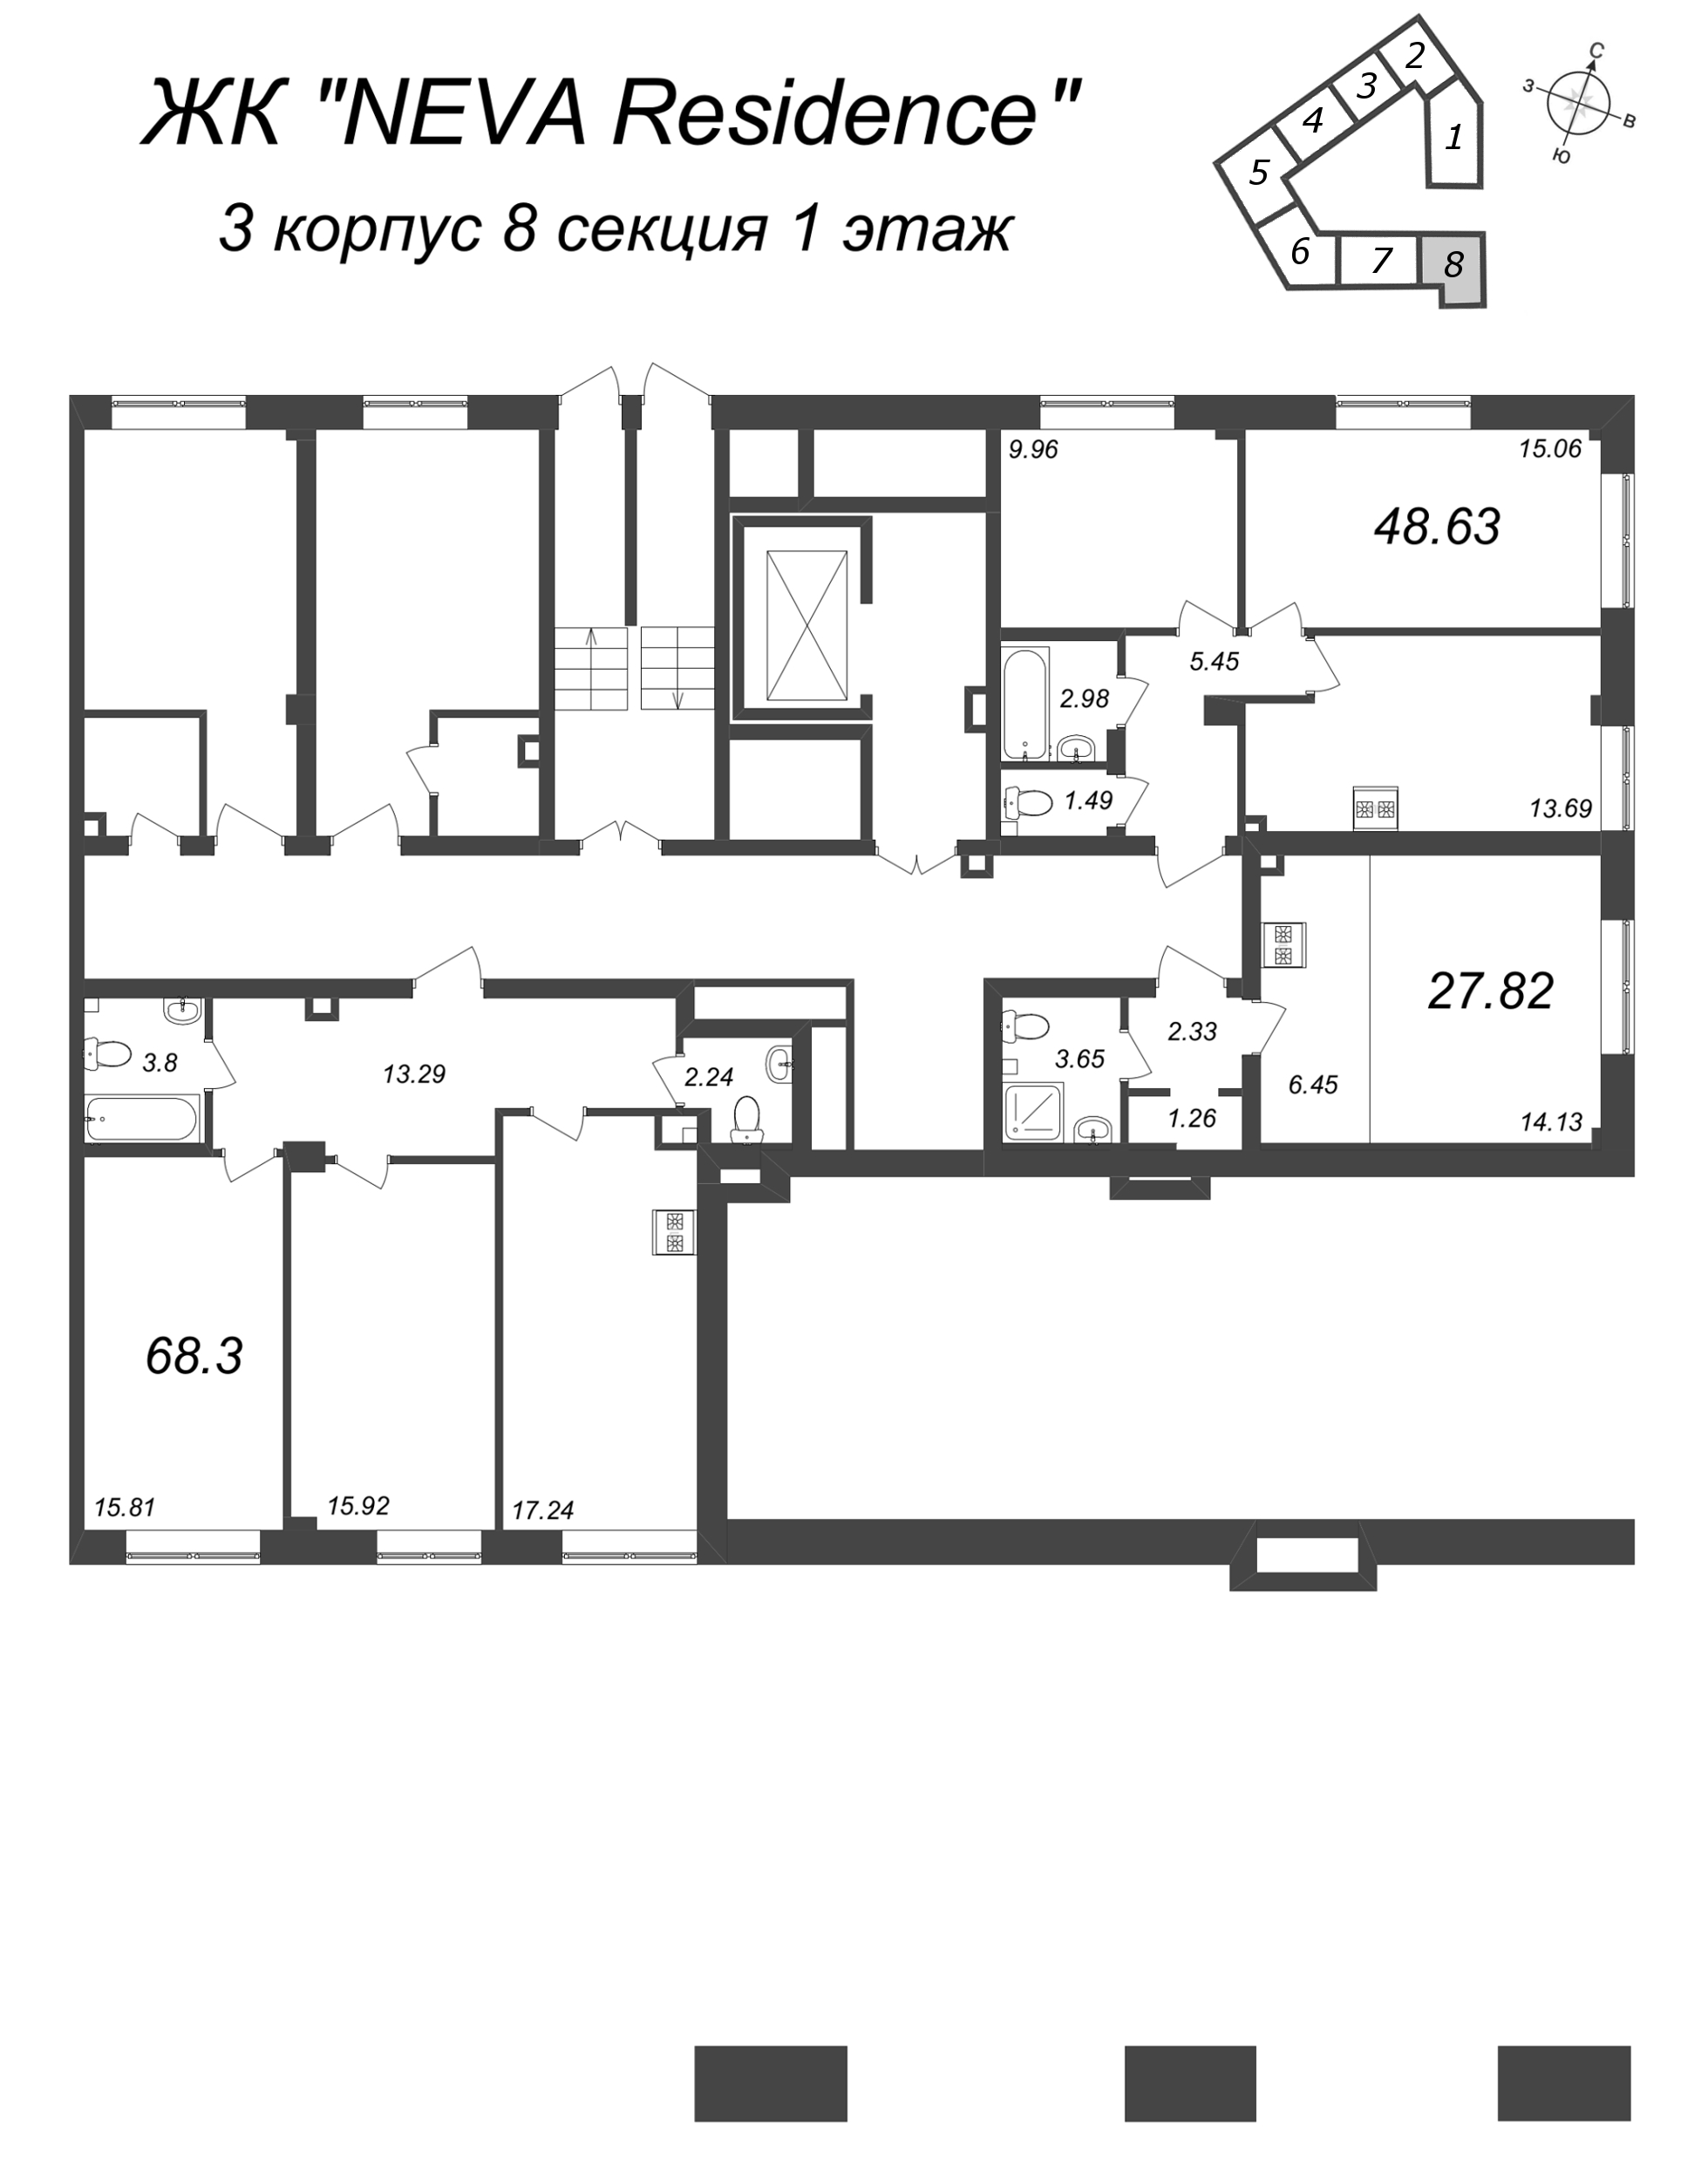 3-комнатная (Евро) квартира, 68.3 м² в ЖК "Neva Residence" - планировка этажа